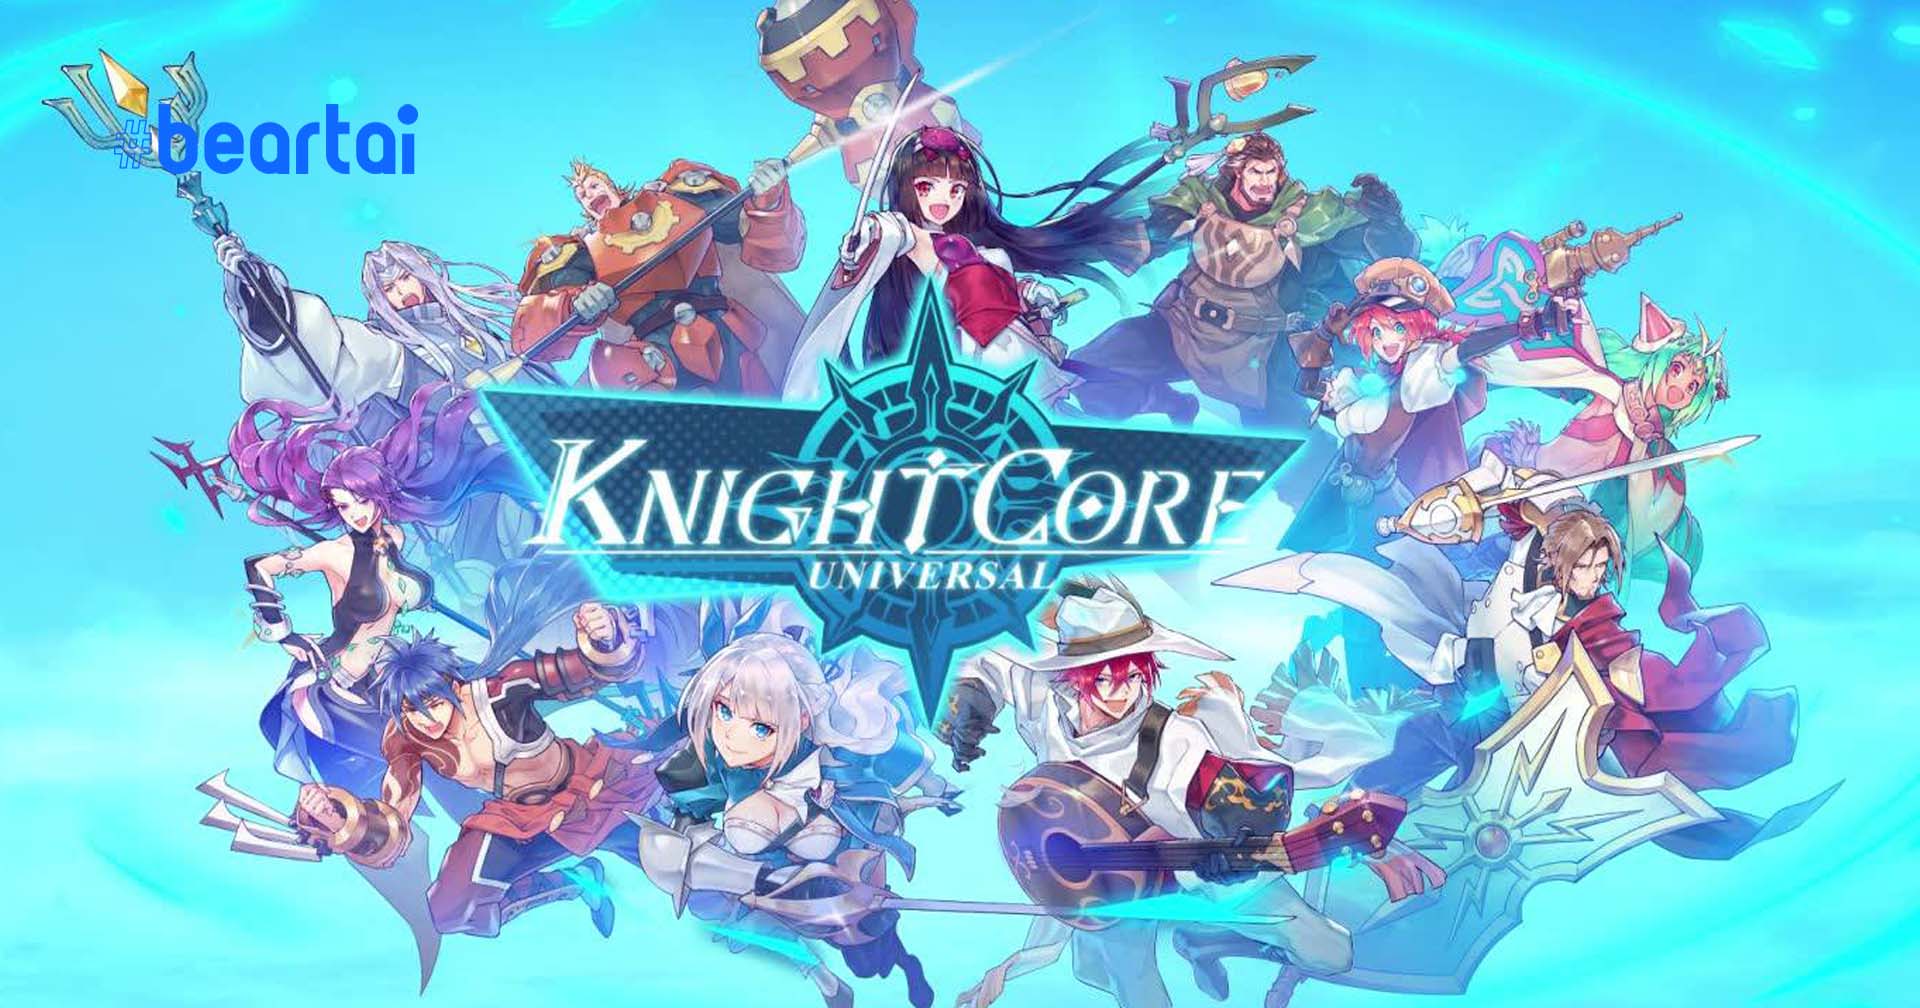 [รีวิวเกม] Knightcore Universal เกม Turn-Based RPG แนวอนิเมะ ระบบน่าสนใจ